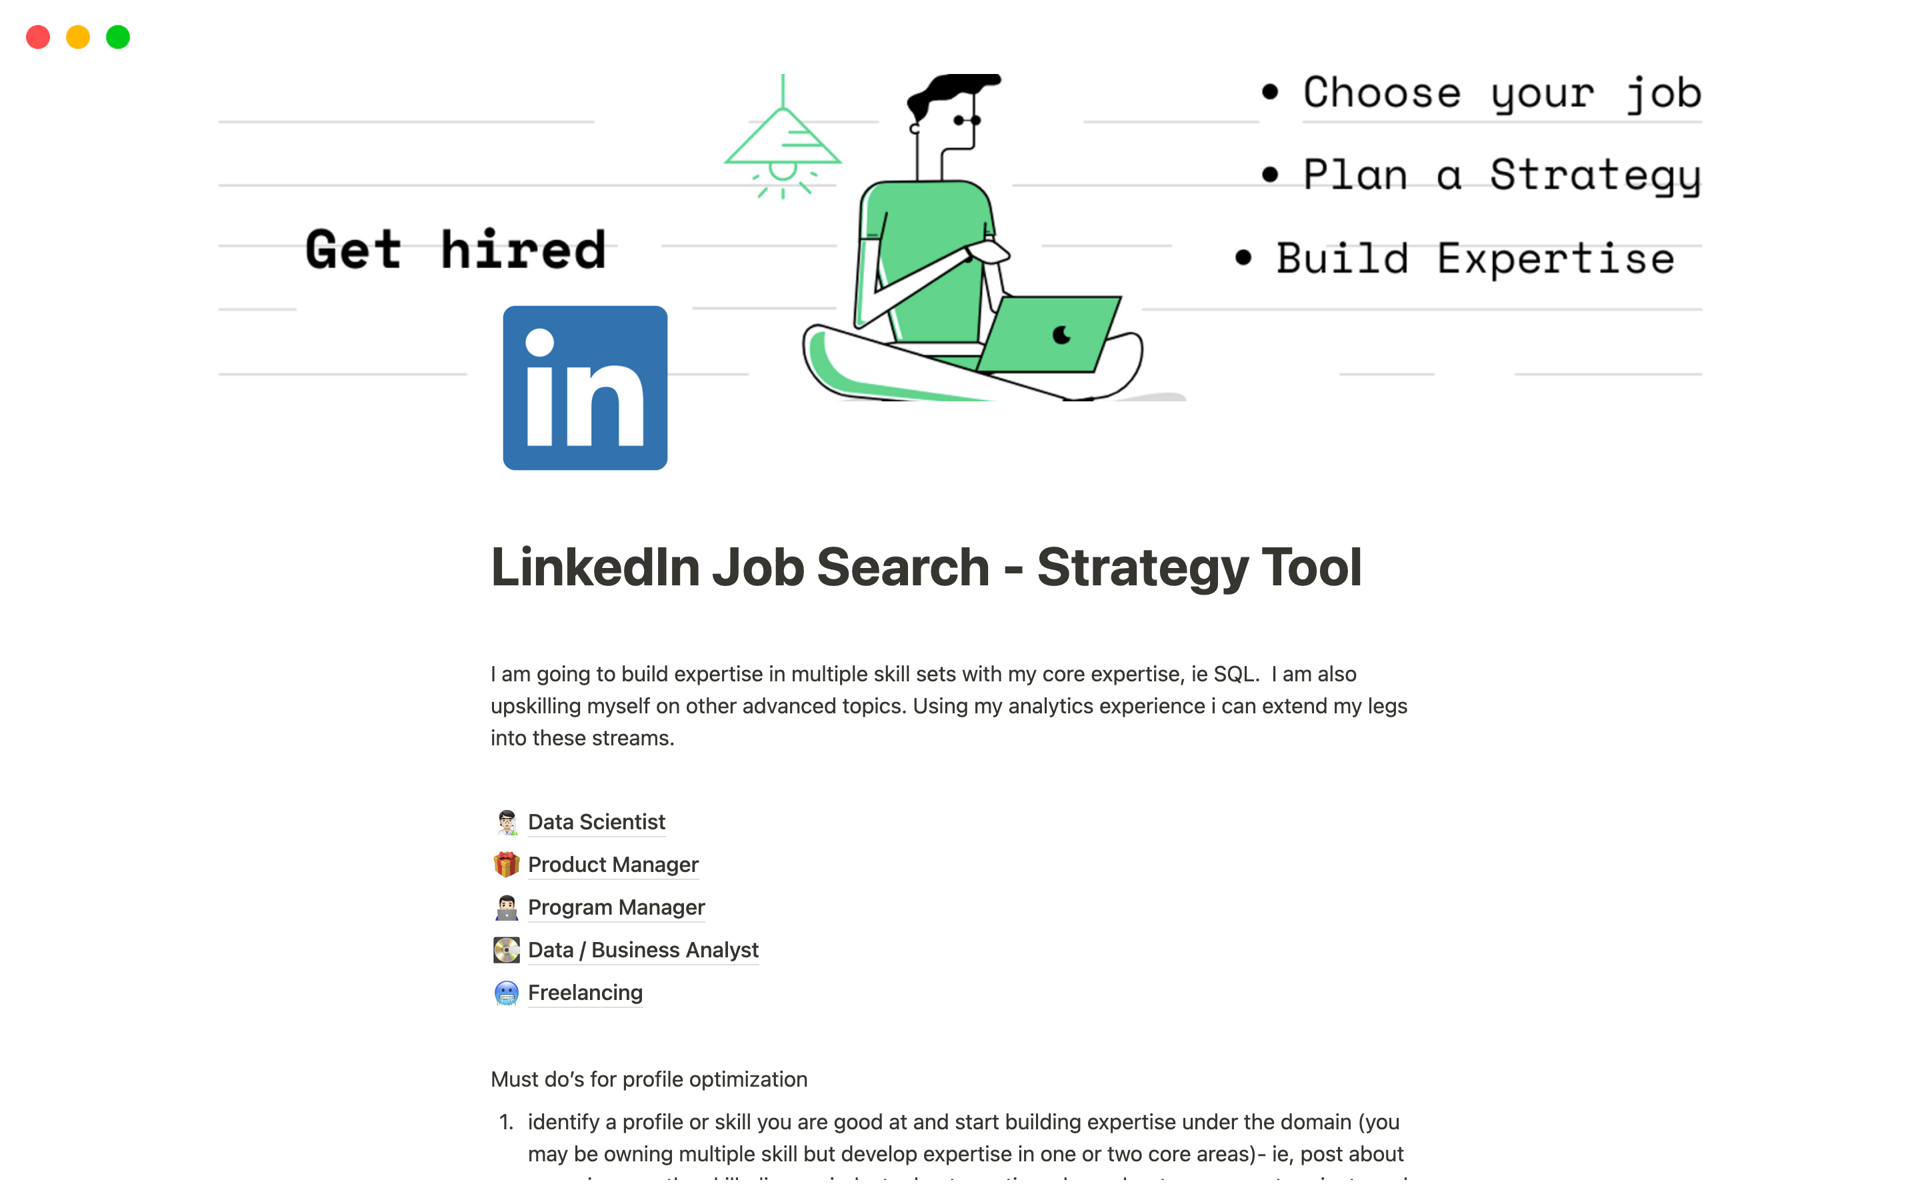 Uma prévia do modelo para LinkedIn Job Search - Strategy Tool